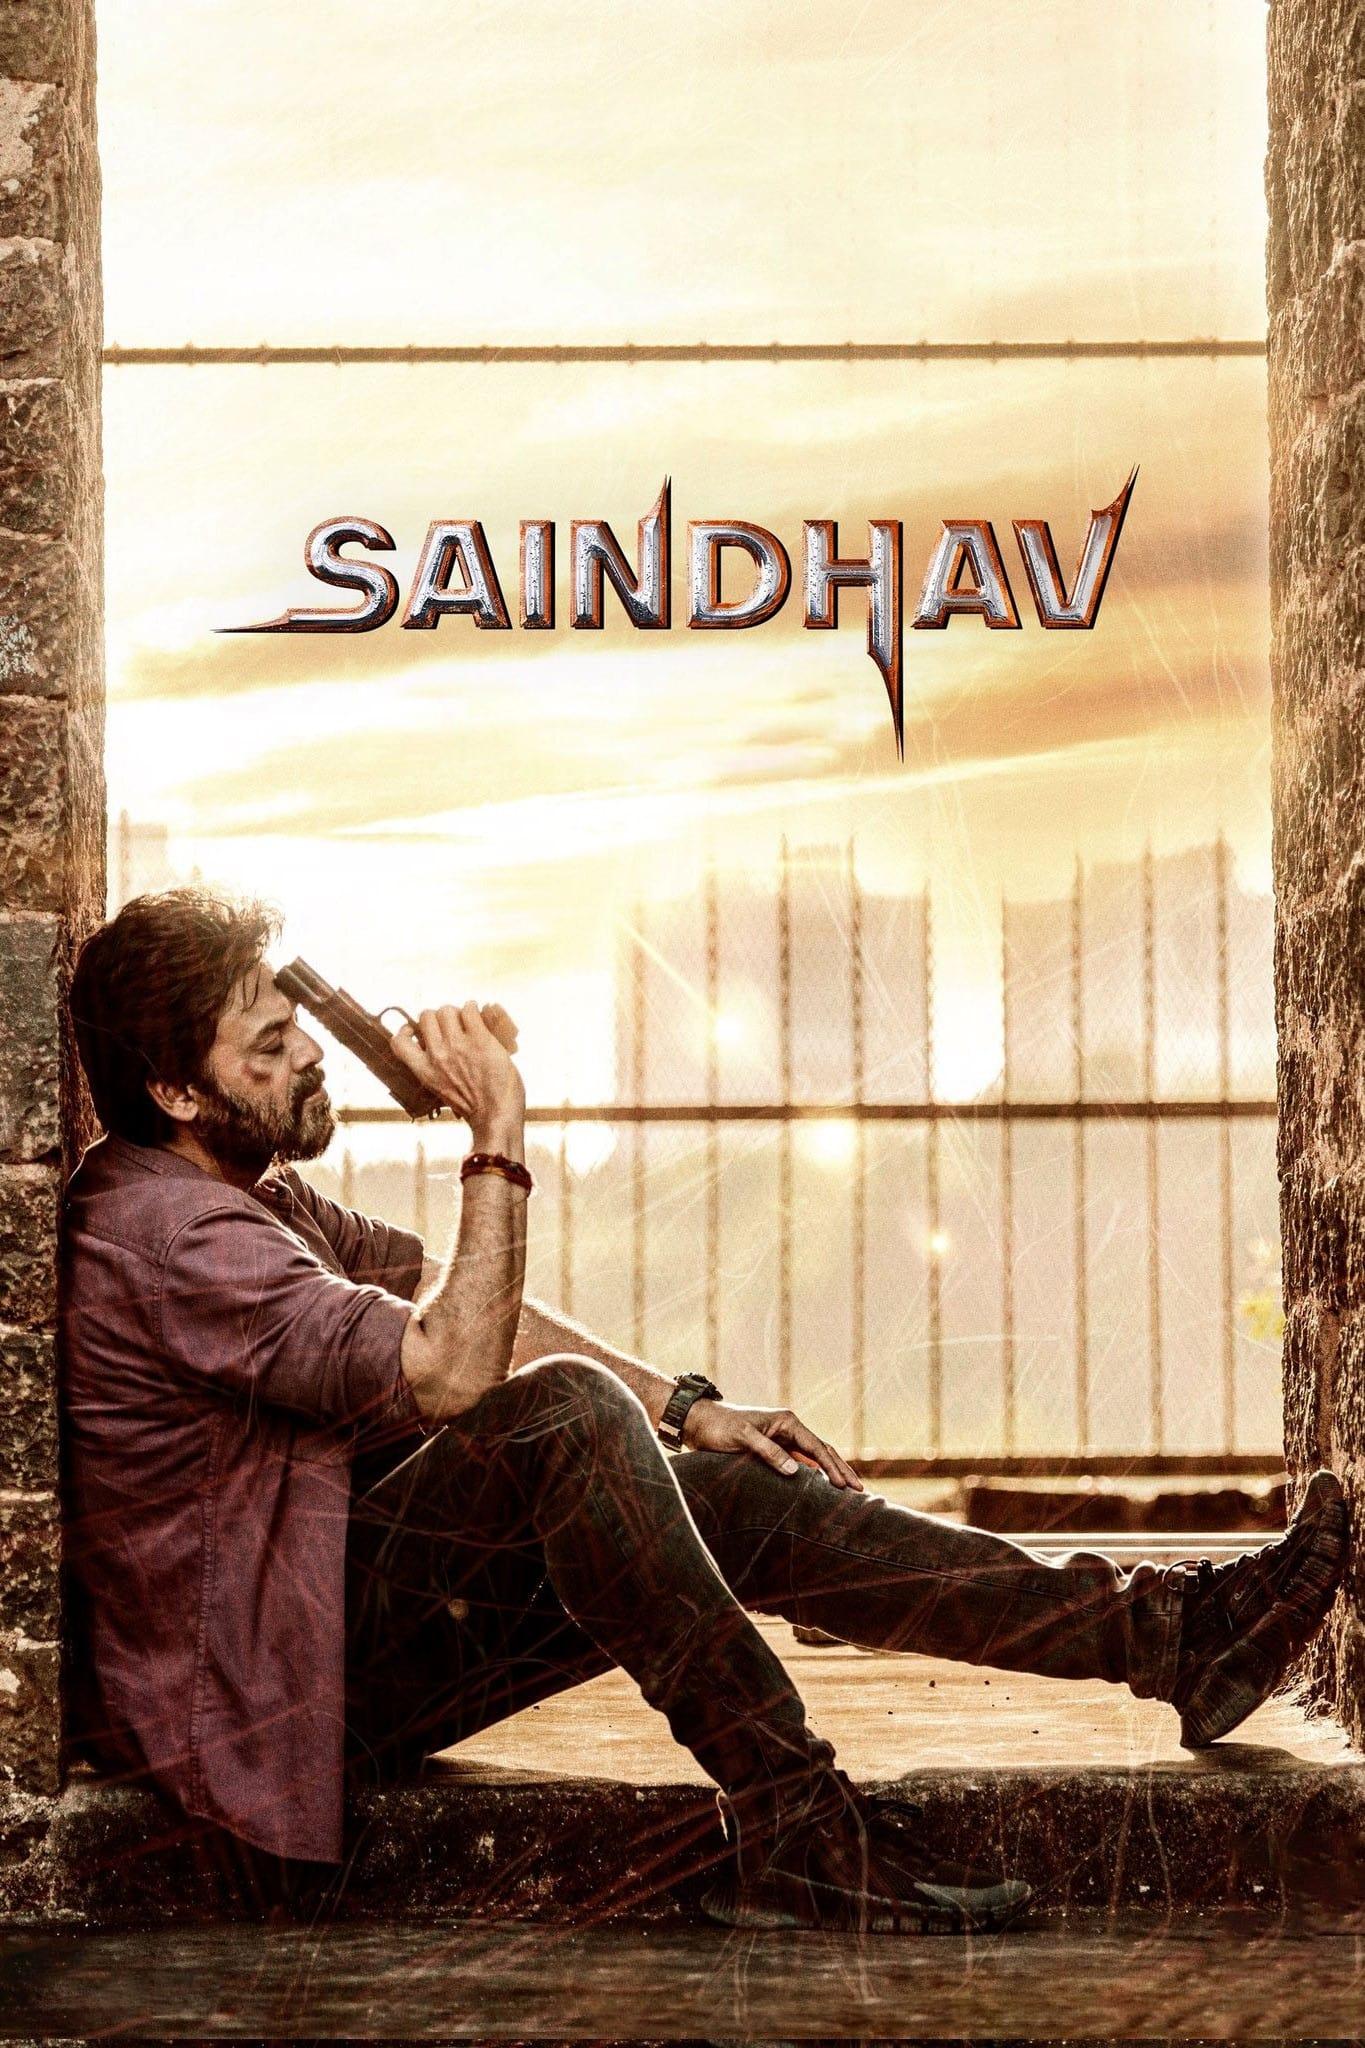 Saindhav poster